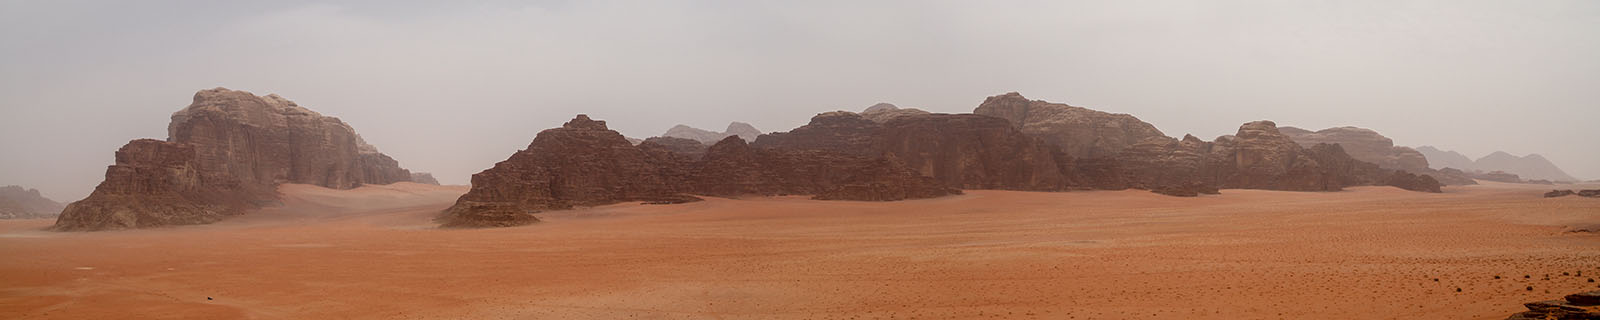 Panoramic view of Wadi Rum